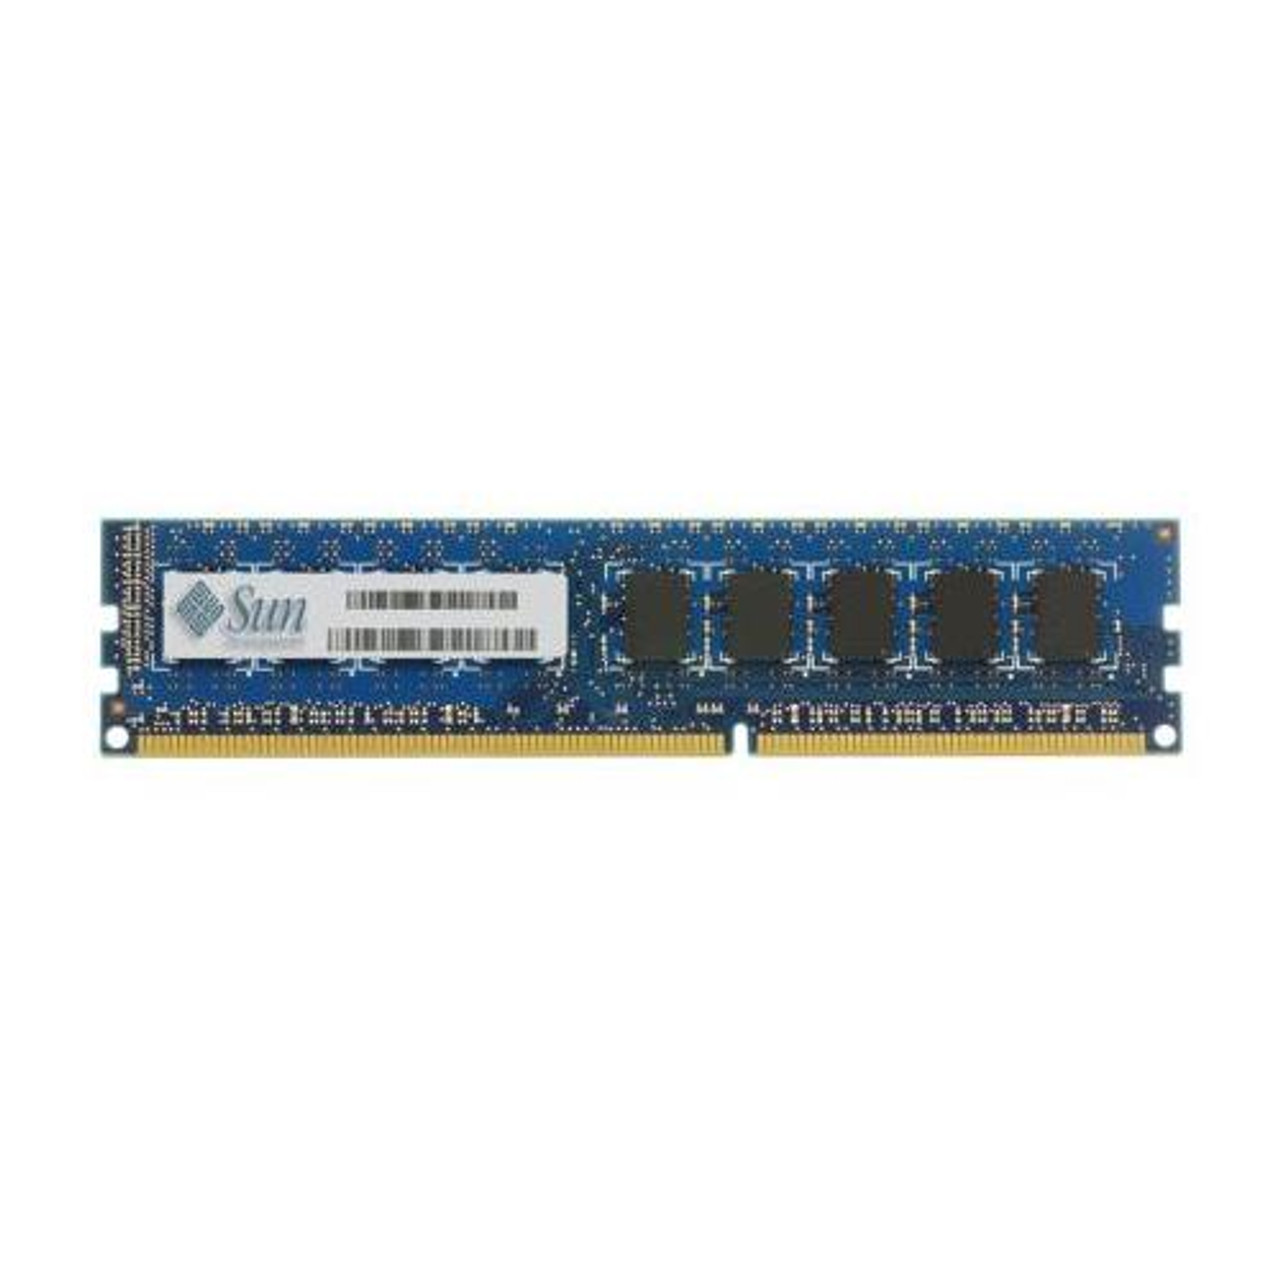 371-4519-01 Sun 2GB DDR3 ECC PC3-10600 1333Mhz 2Rx8